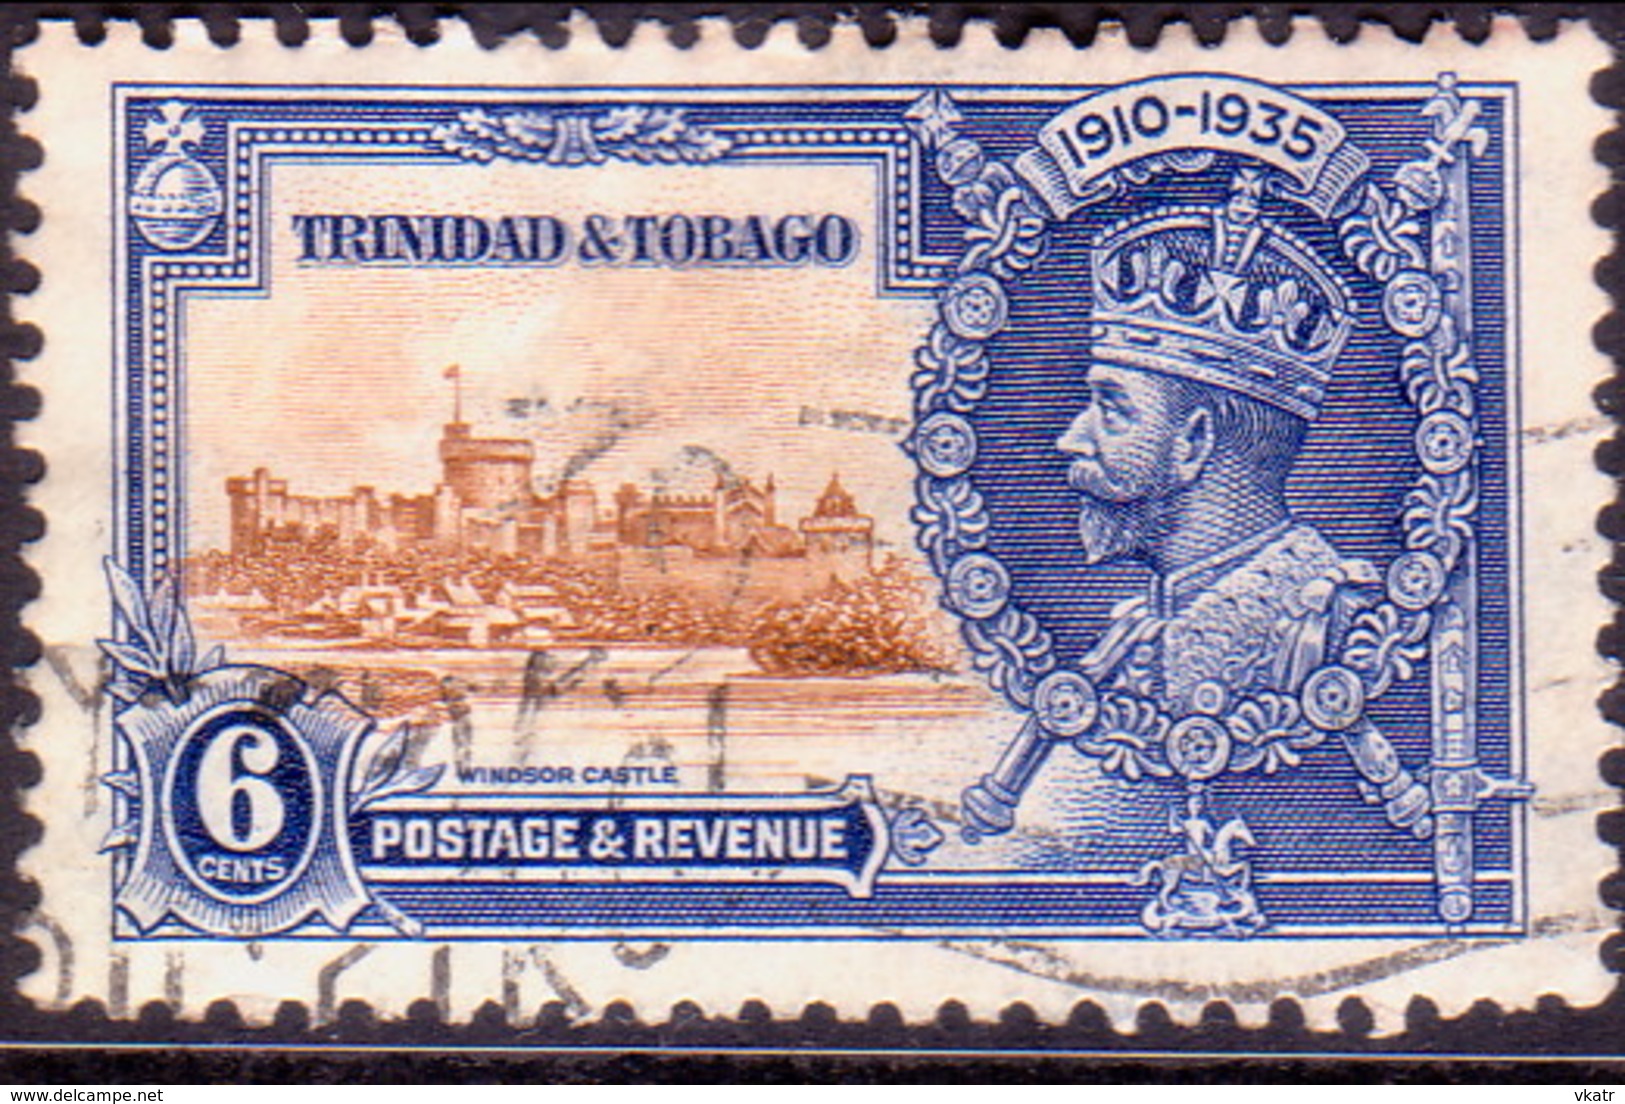 TRINIDAD & TOBAGO 1935 SG #241 6c Used Silver Jubilee - Trindad & Tobago (...-1961)